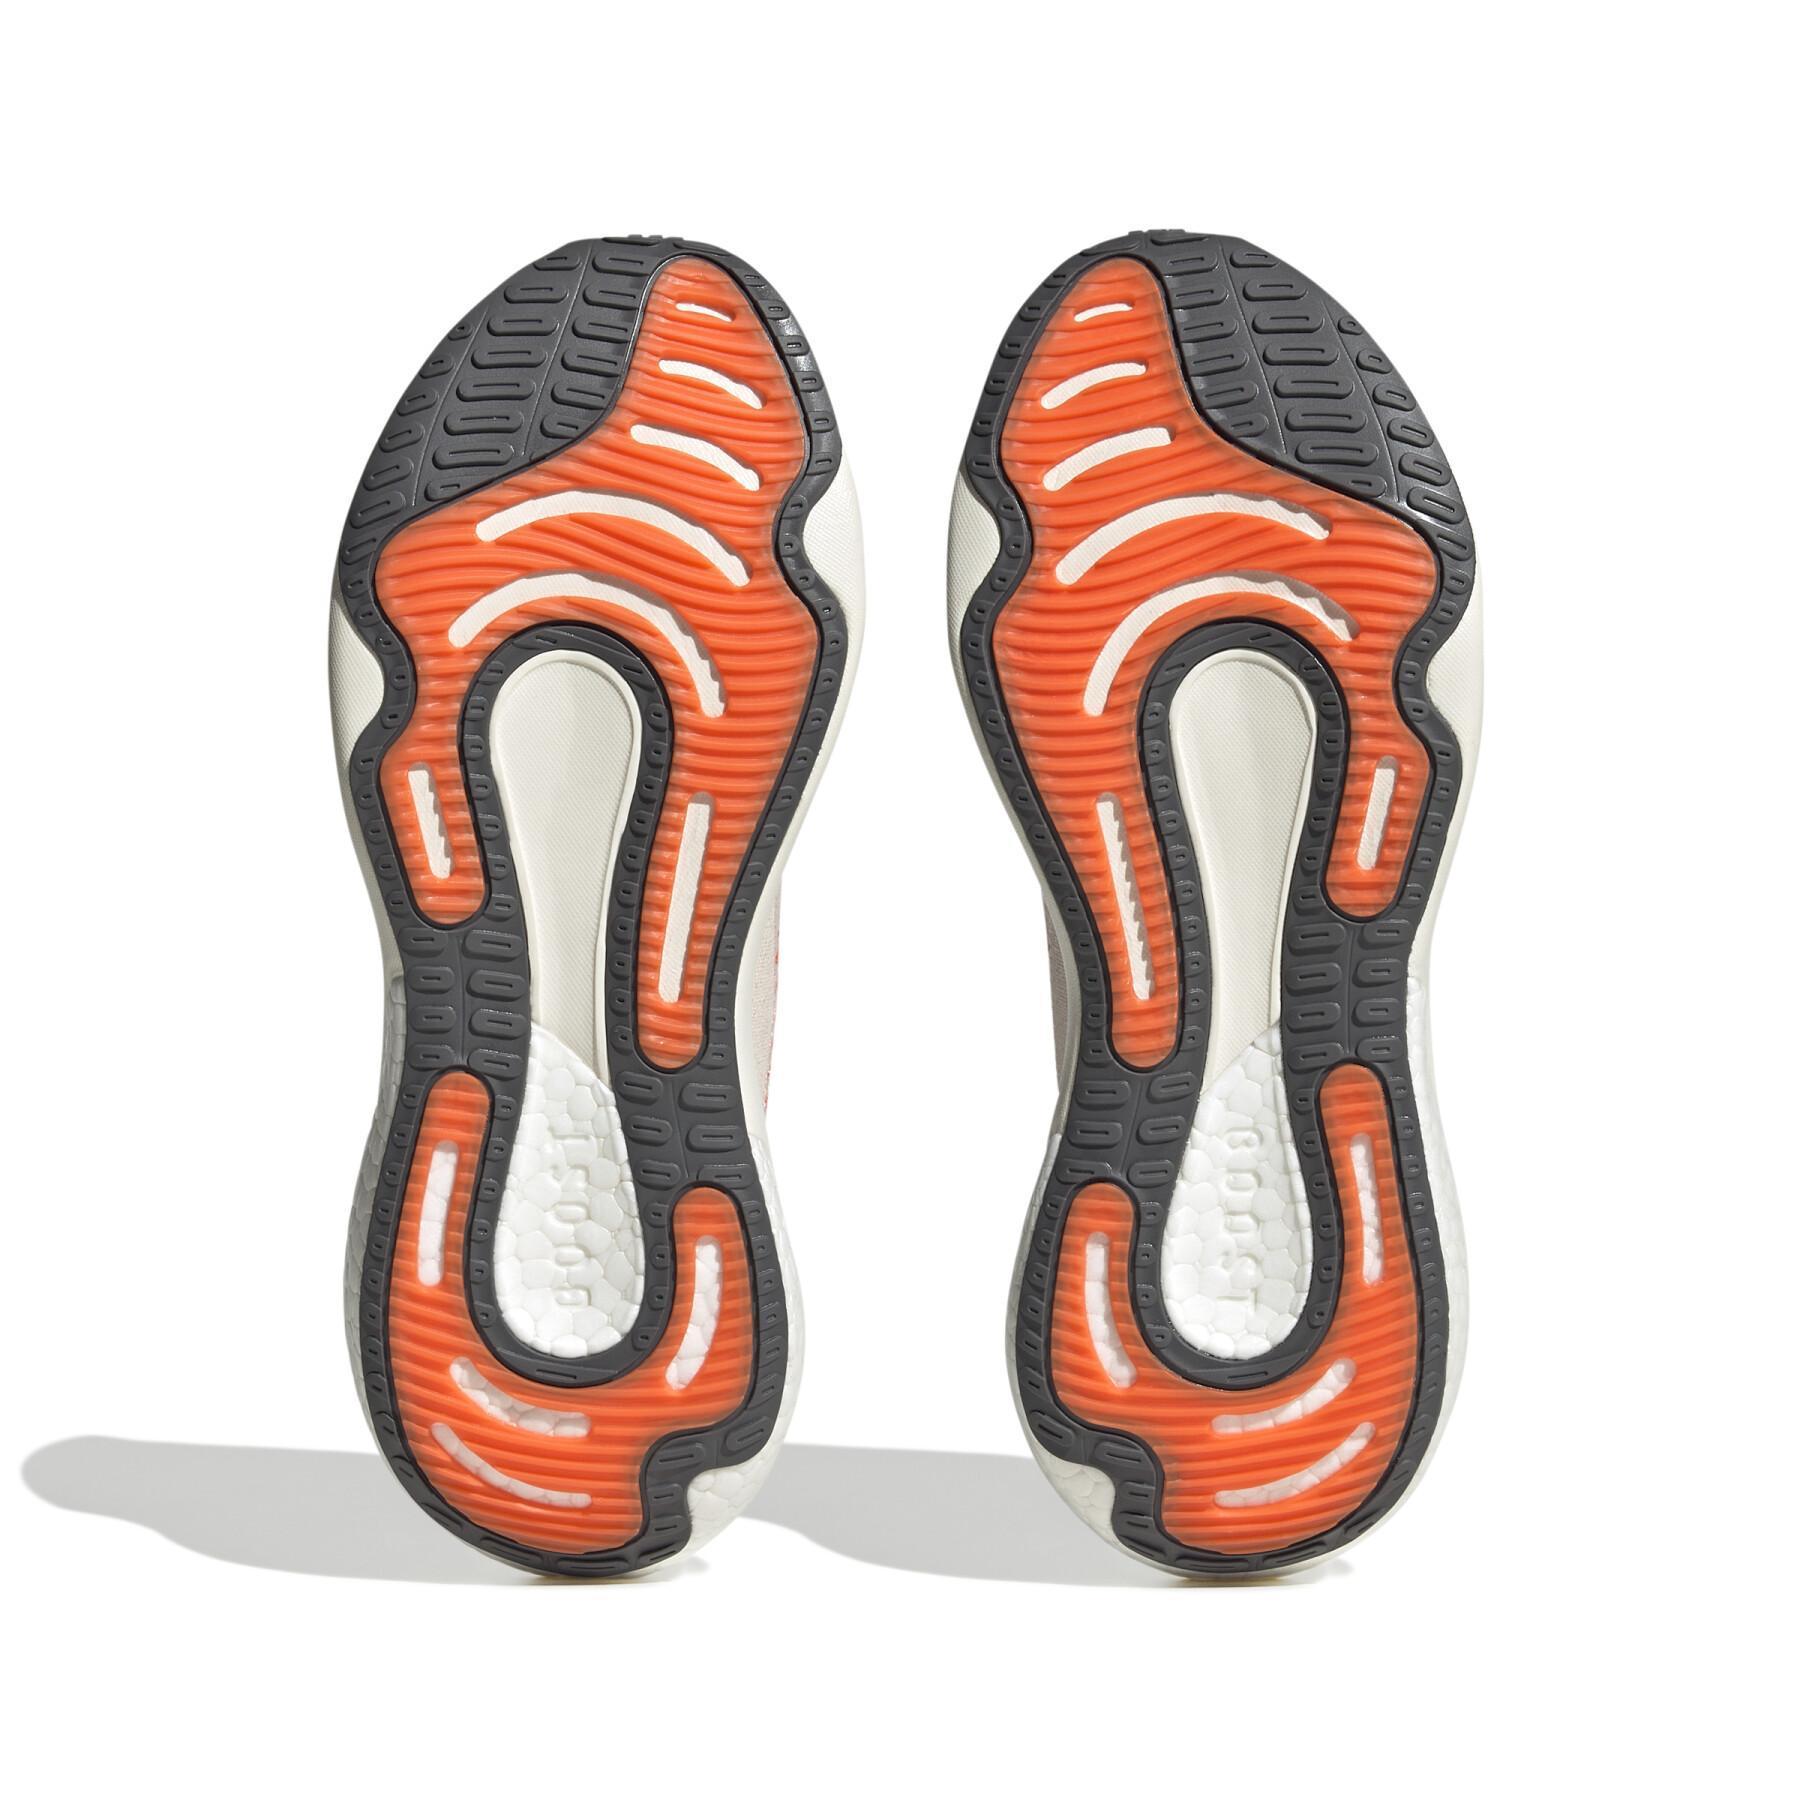 Chaussures de running femme adidas Supernova 2.0 x Parley